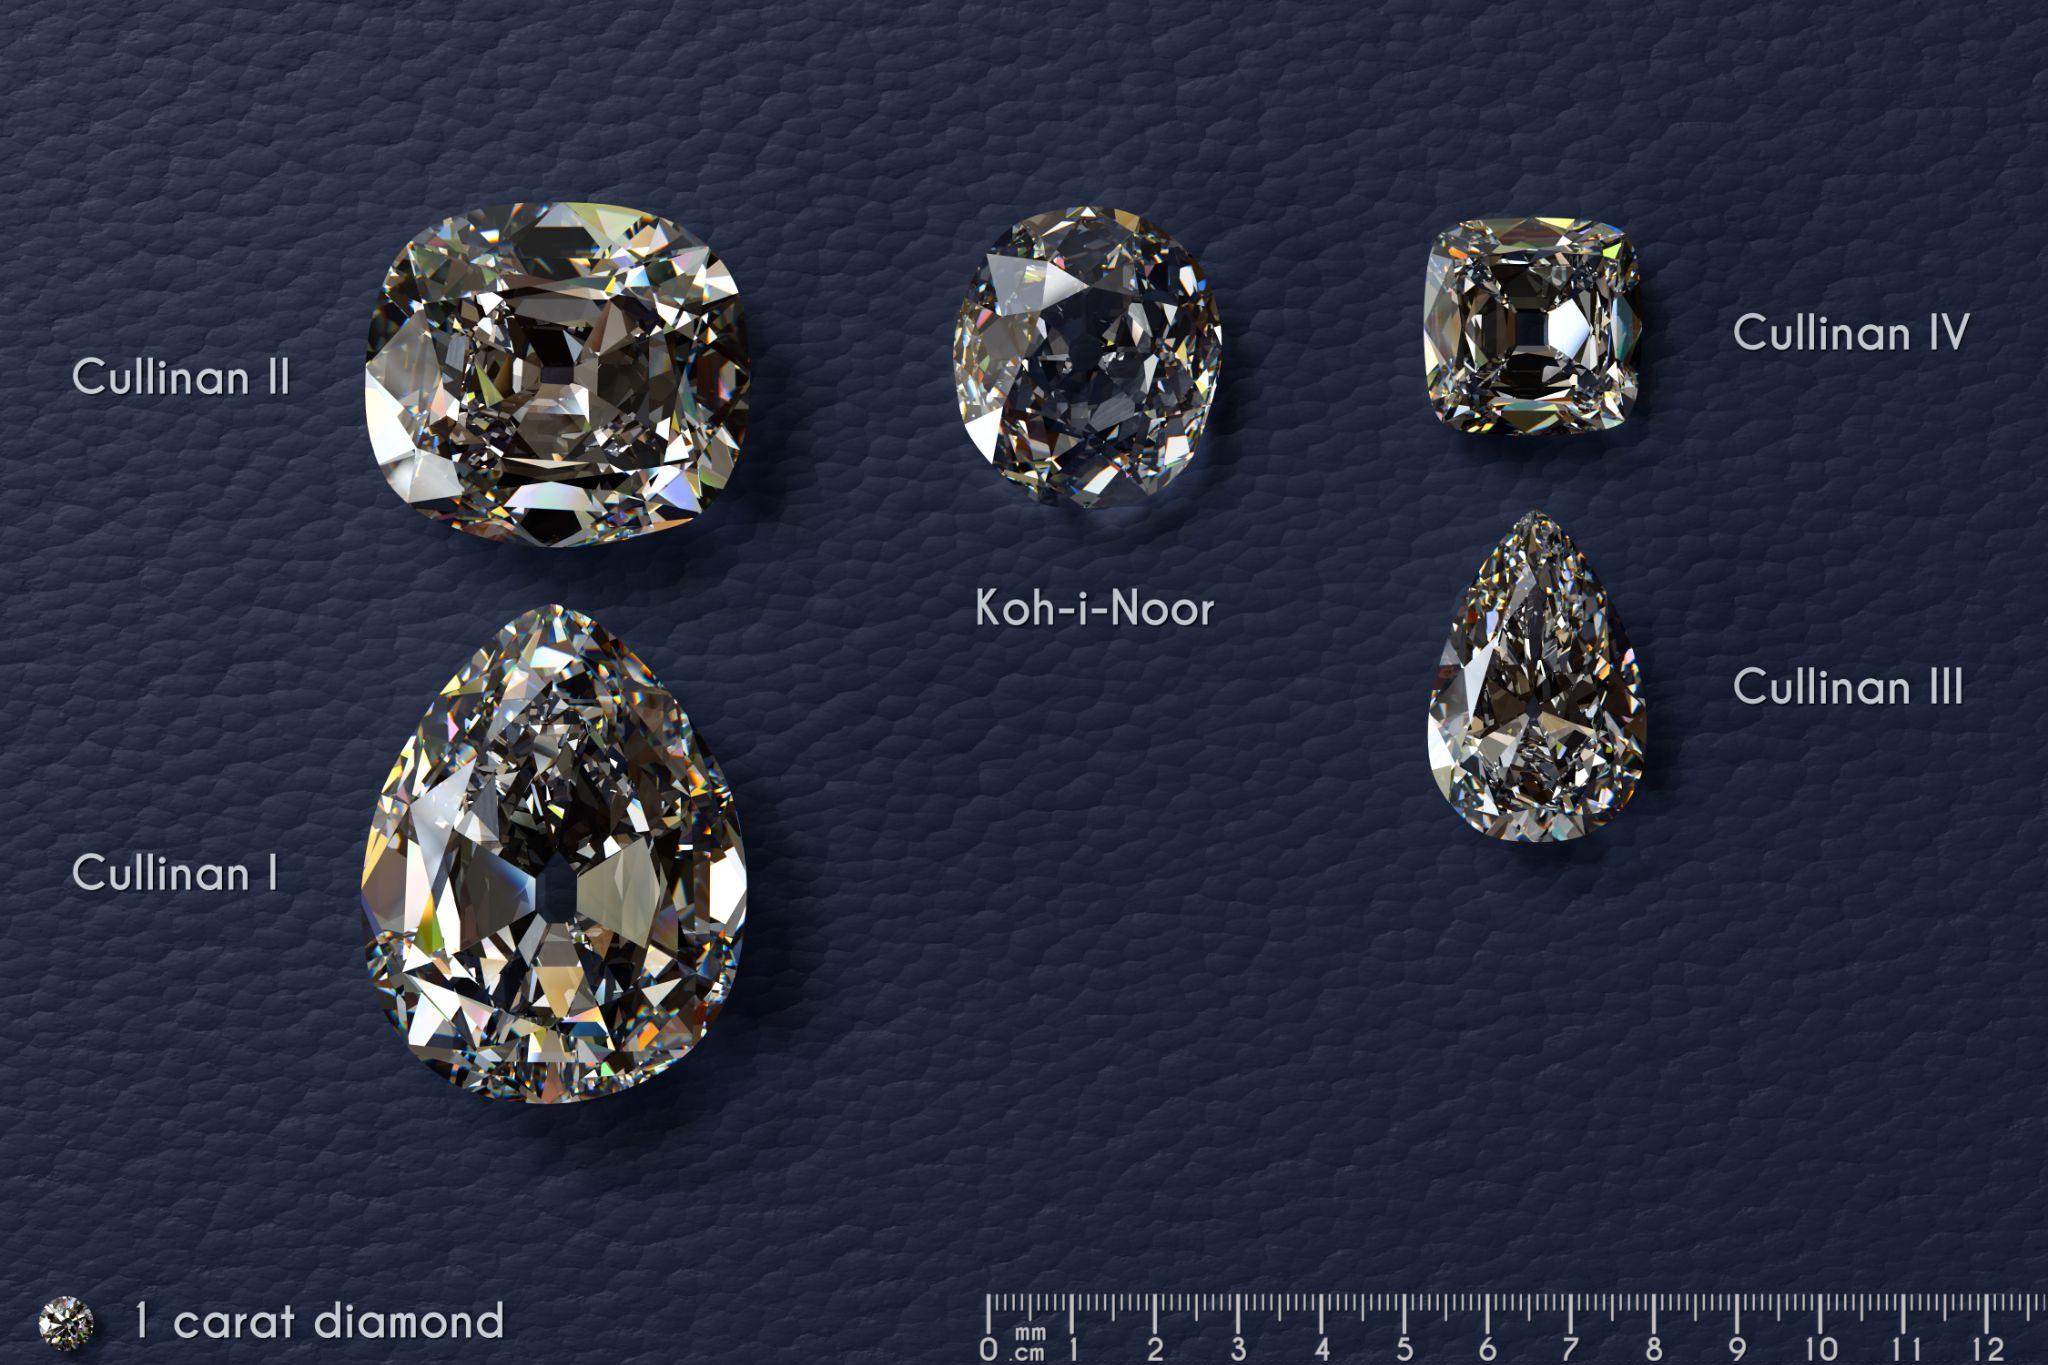 Koh-i-Noor diamonds